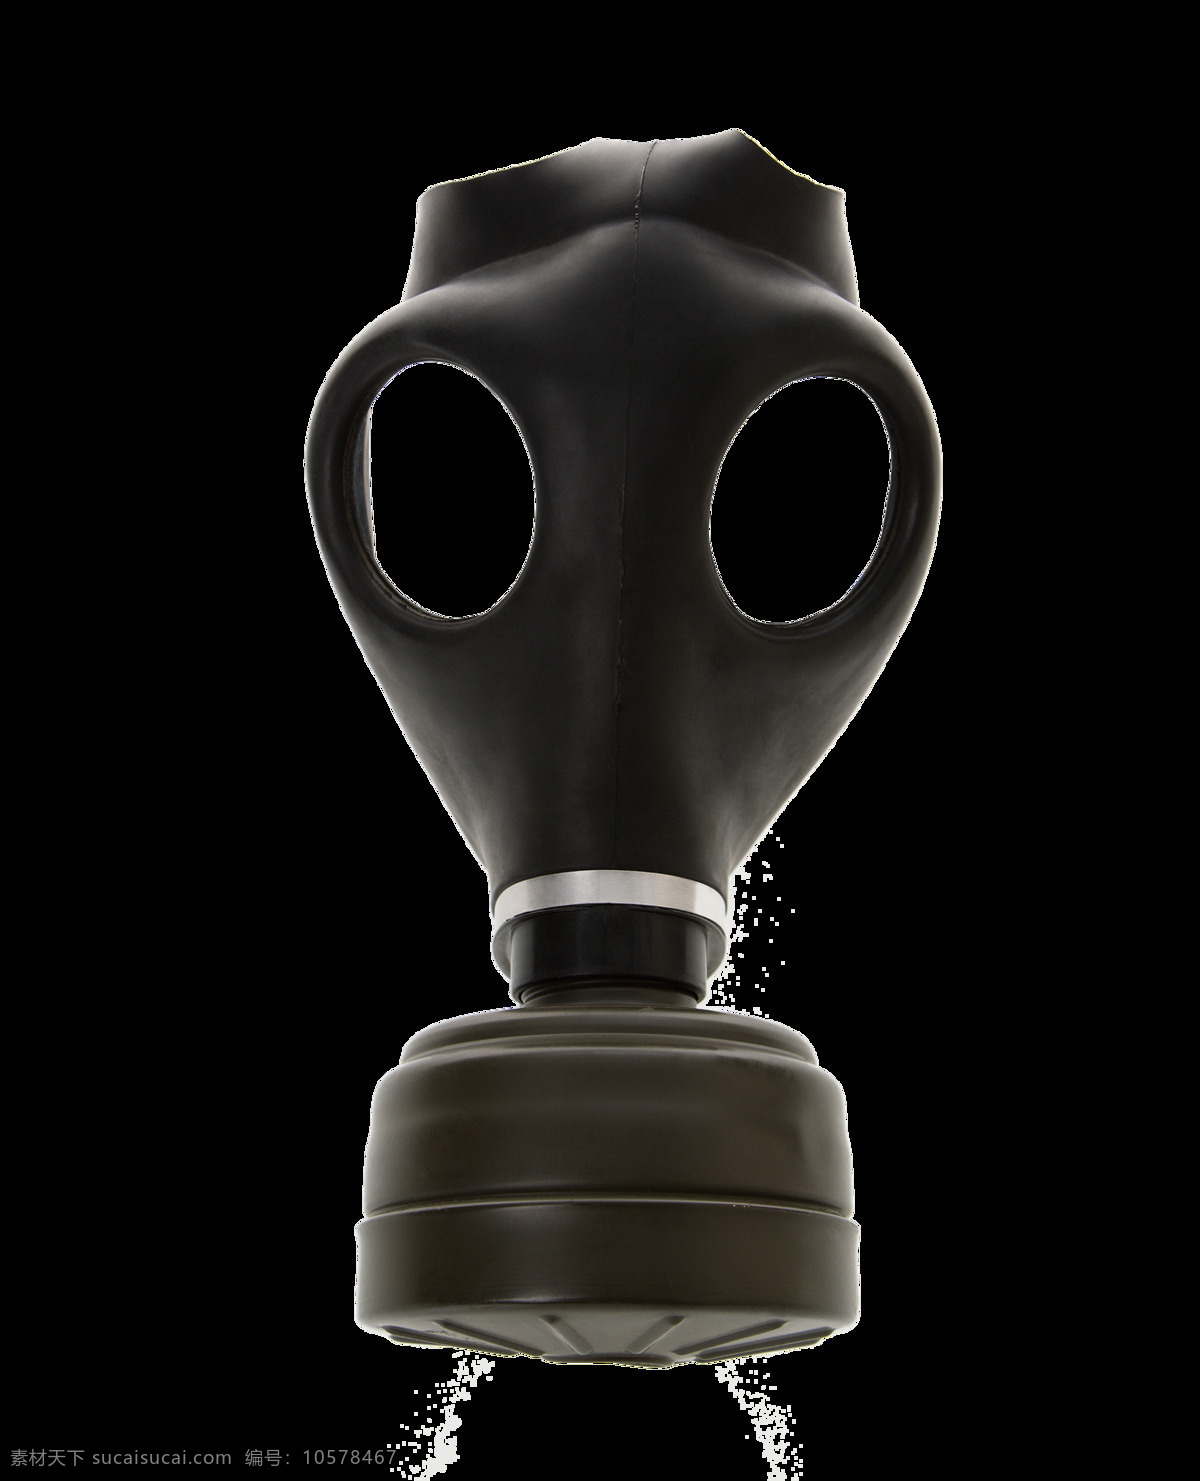 黑色 带 氧气 防毒面具 免 抠 透明 防毒面具图 广告 创 意图